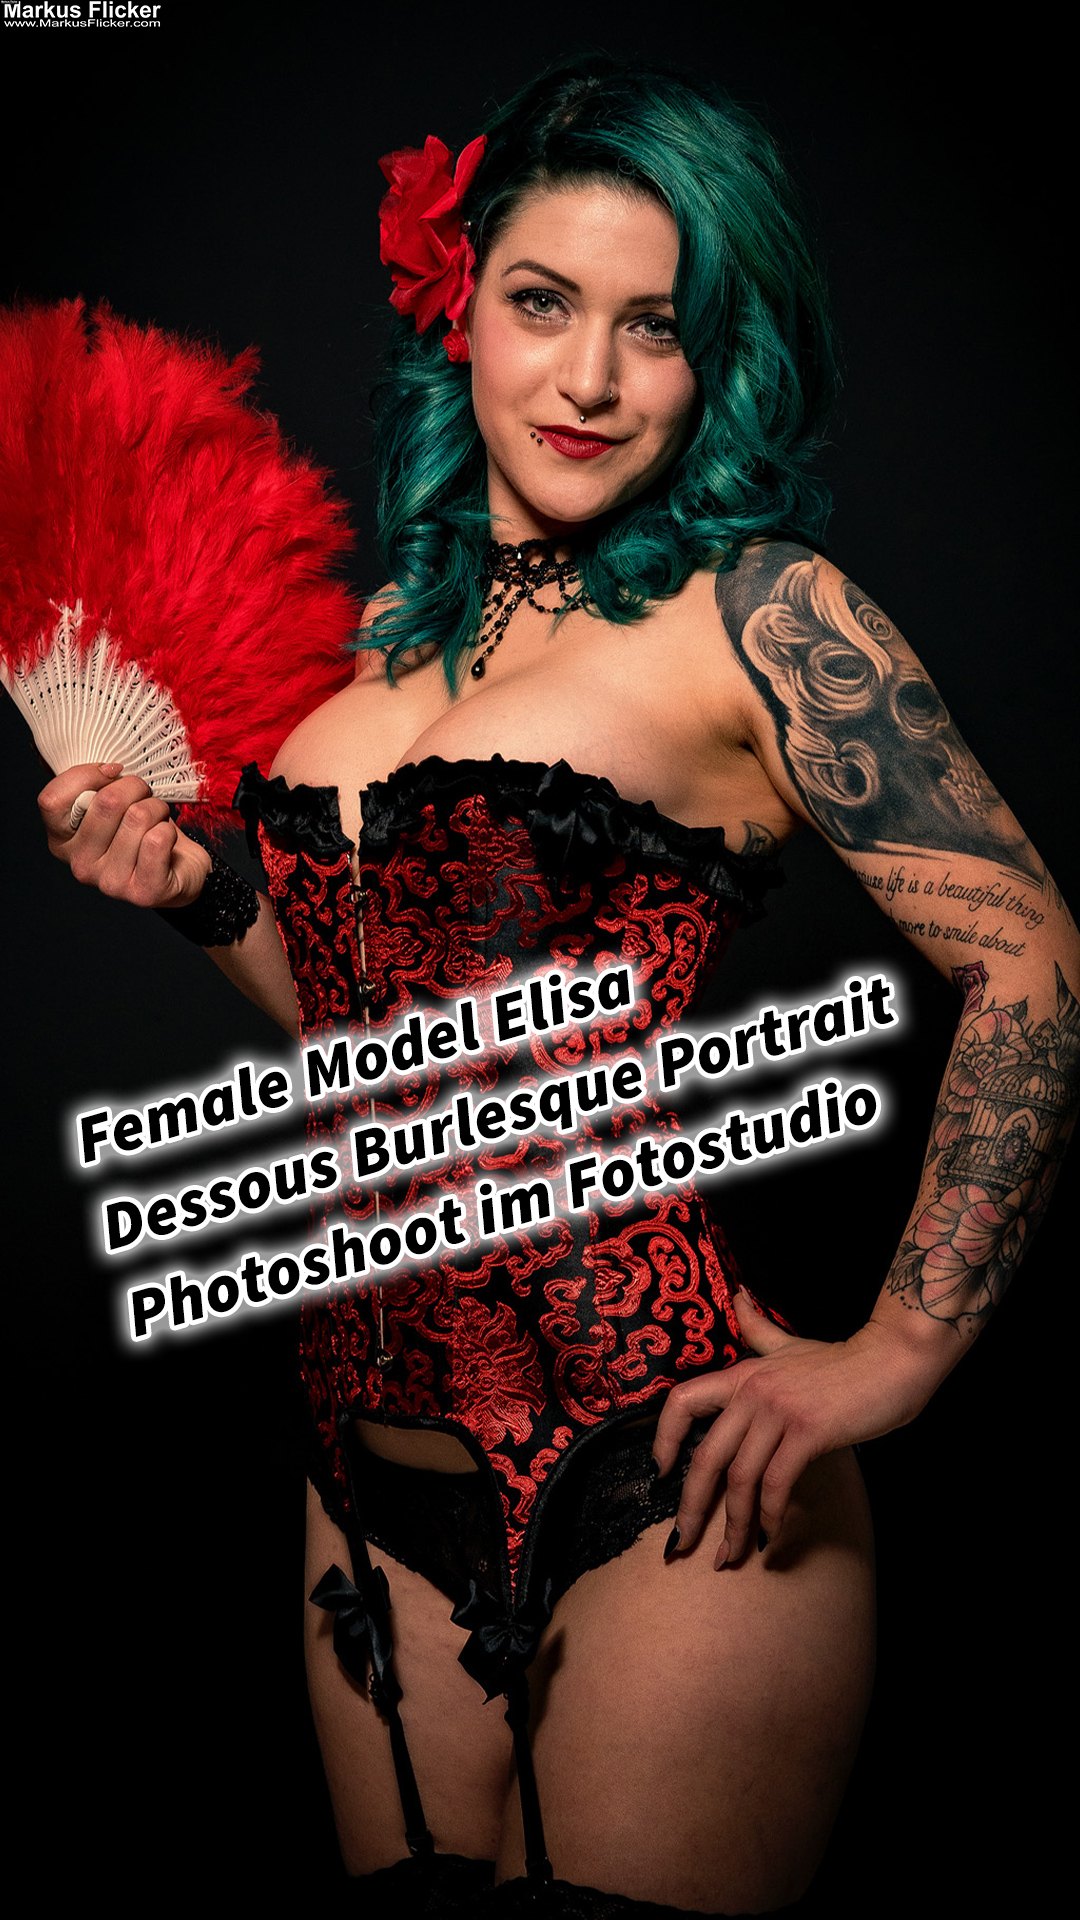 Female Model Elisa Dessous Burlesque Corsage Portrait Photoshoot im Fotostudio